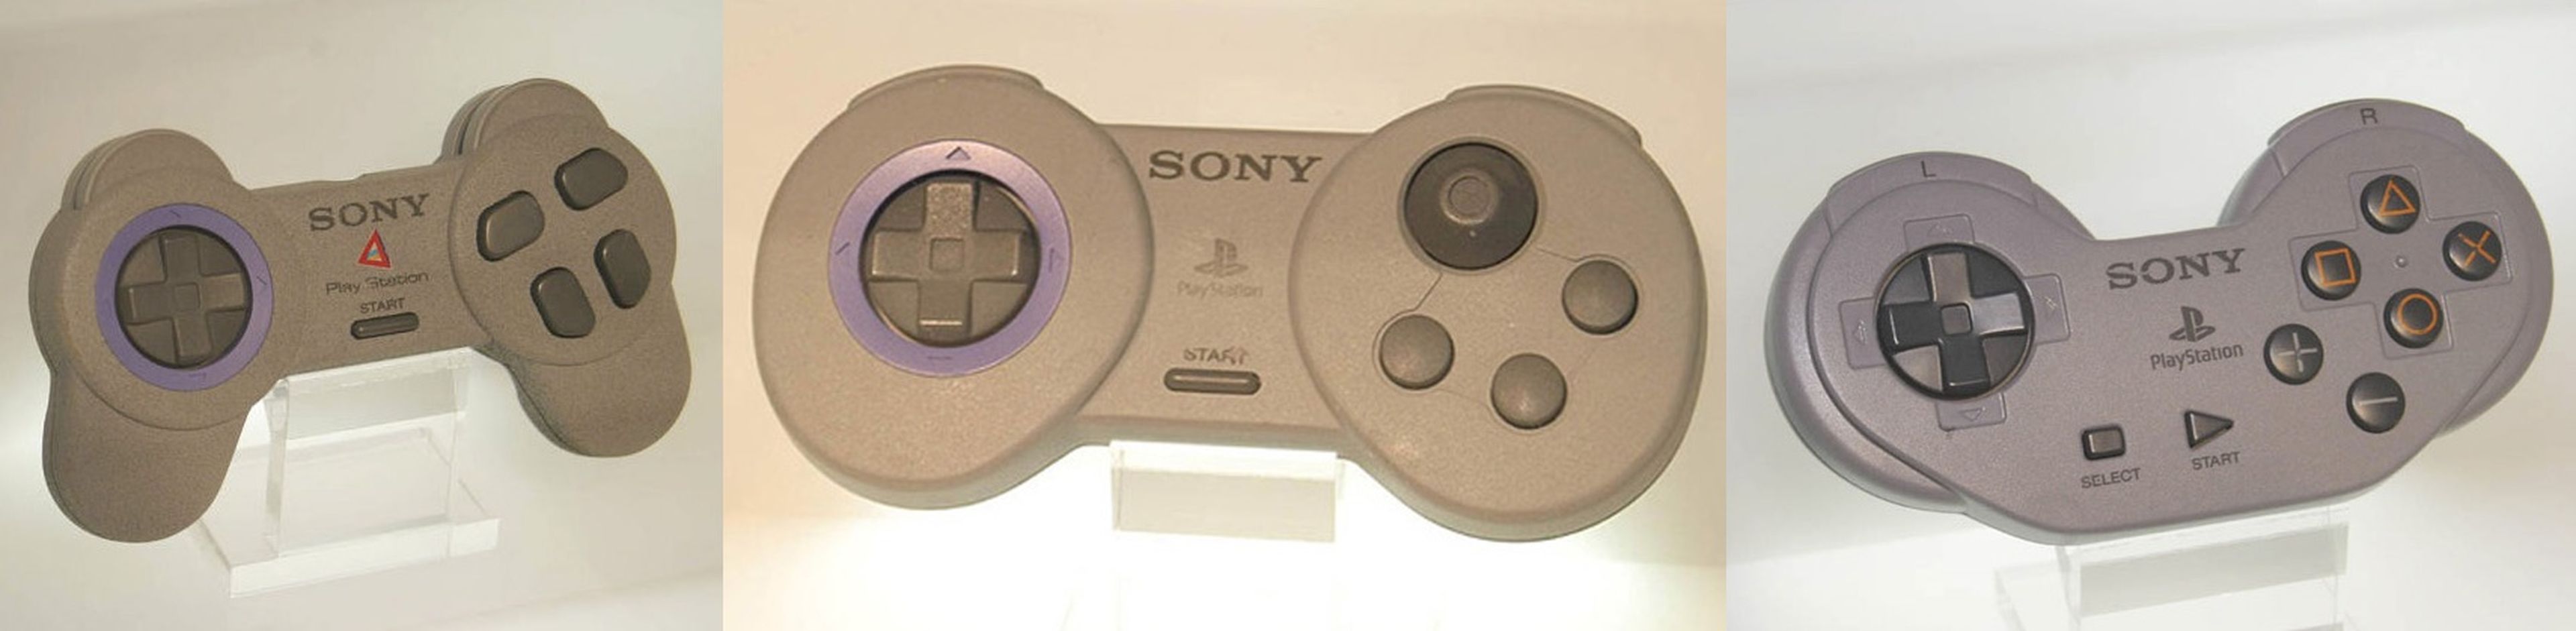 prototipos mandos PlayStation